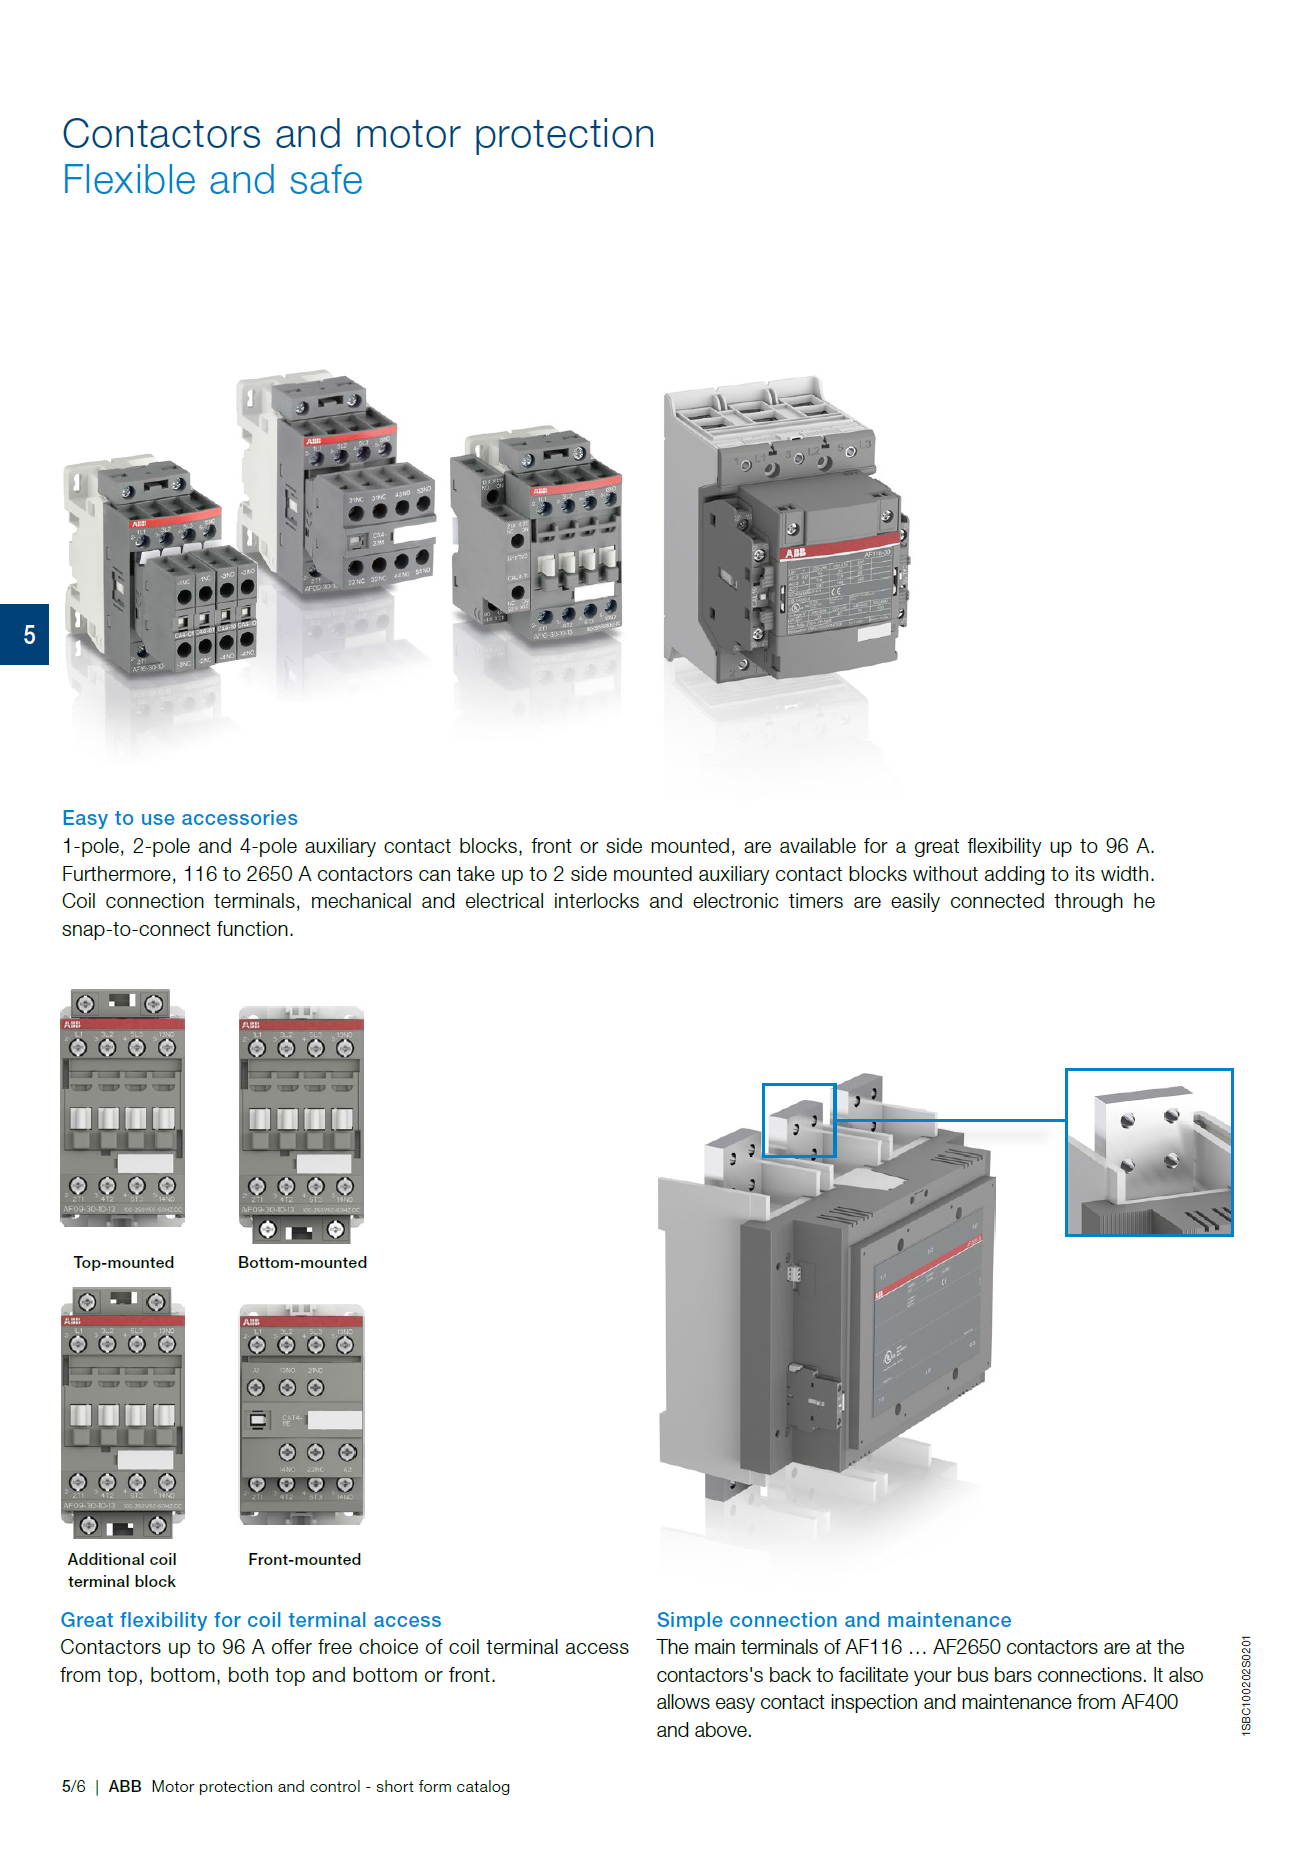 ABB Magnetic Contactors AF Series : AF580-30-11